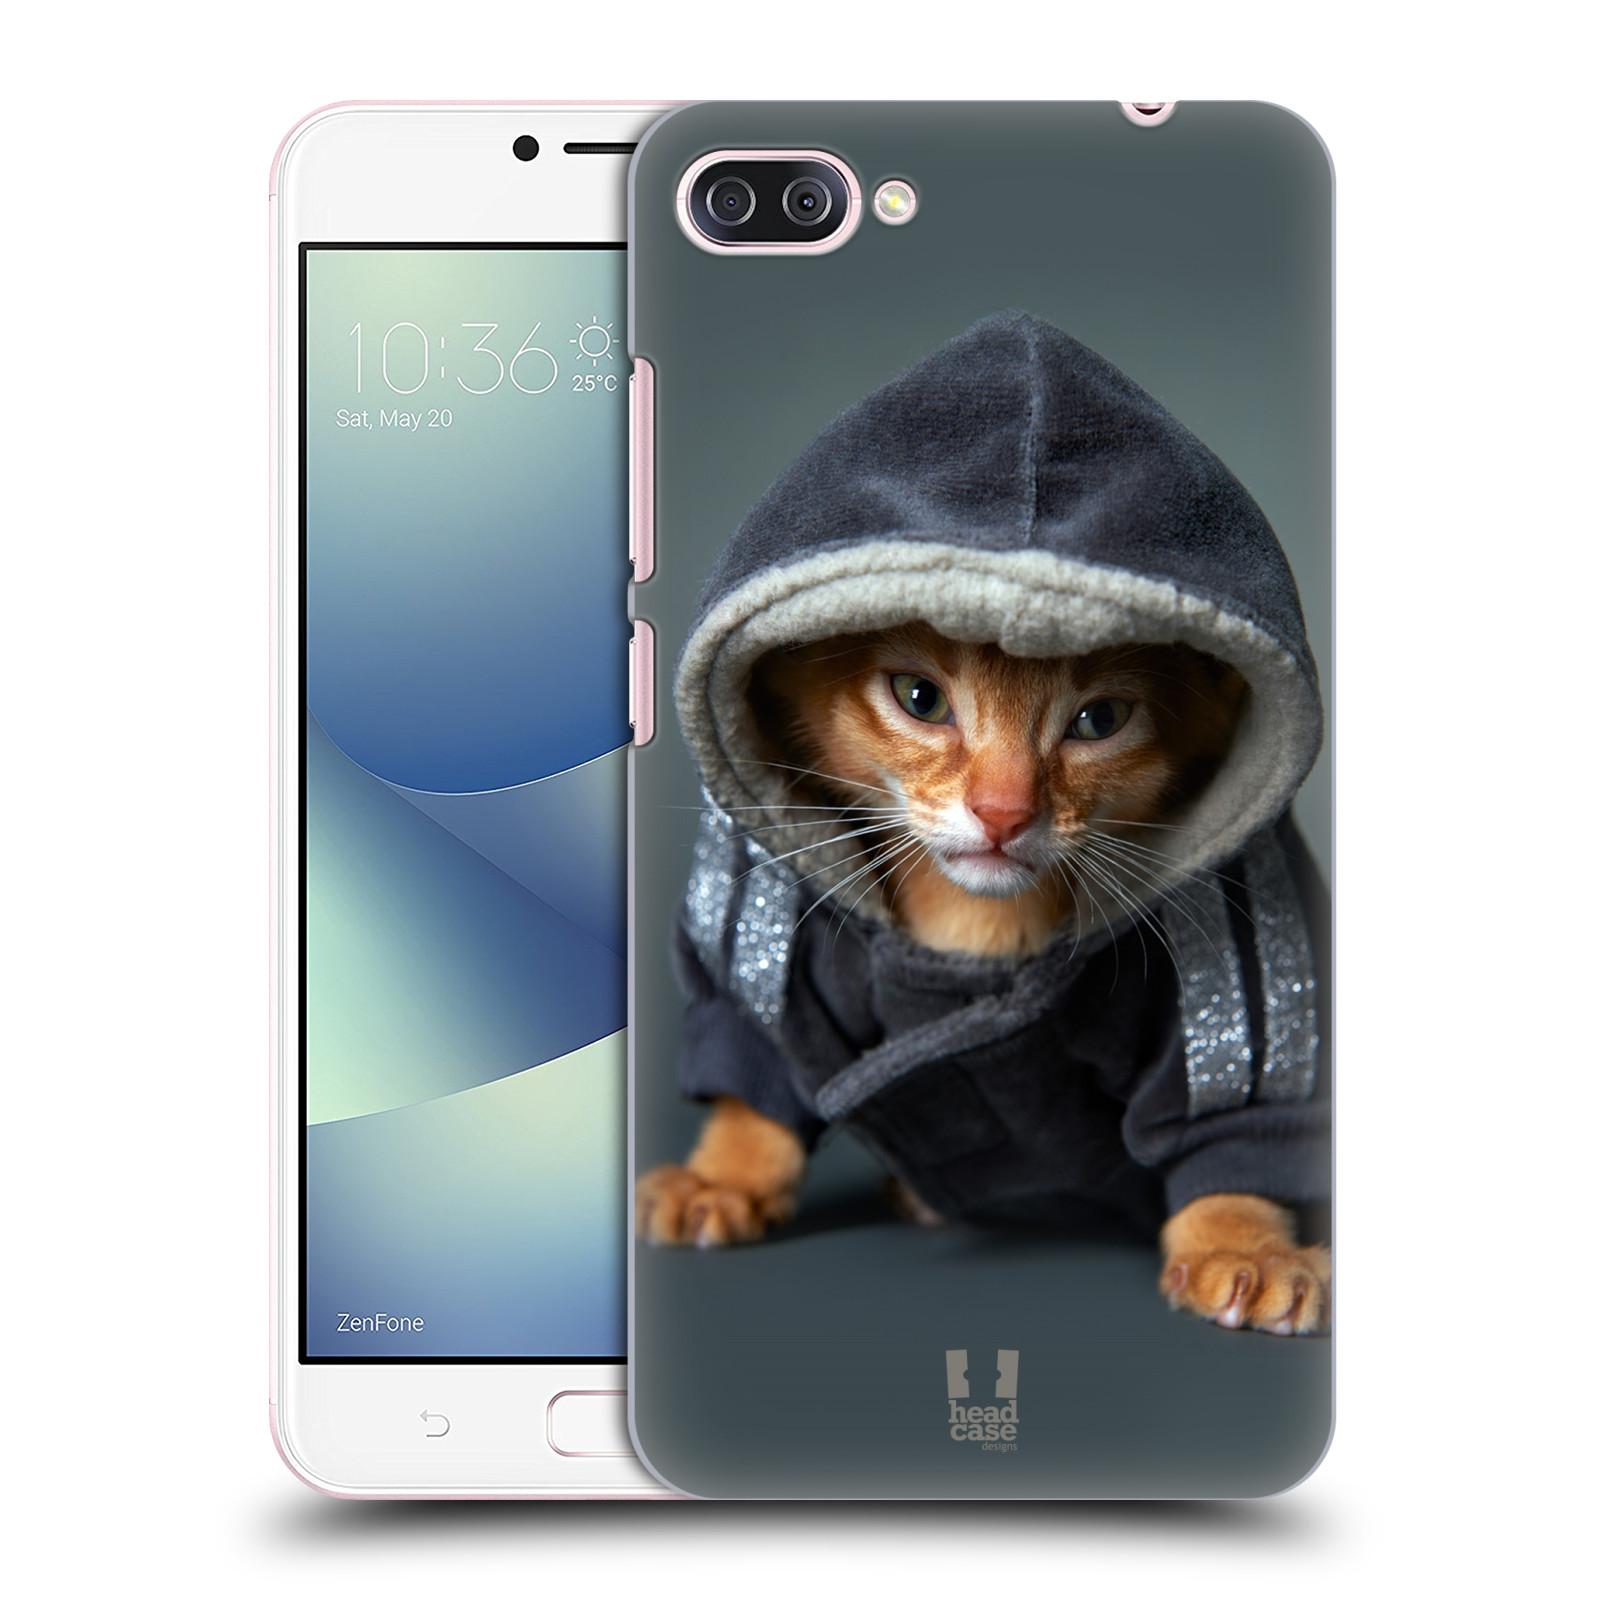 HEAD CASE plastový obal na mobil Asus Zenfone 4 MAX ZC554KL vzor Legrační zvířátka kotě/kočička s kapucí